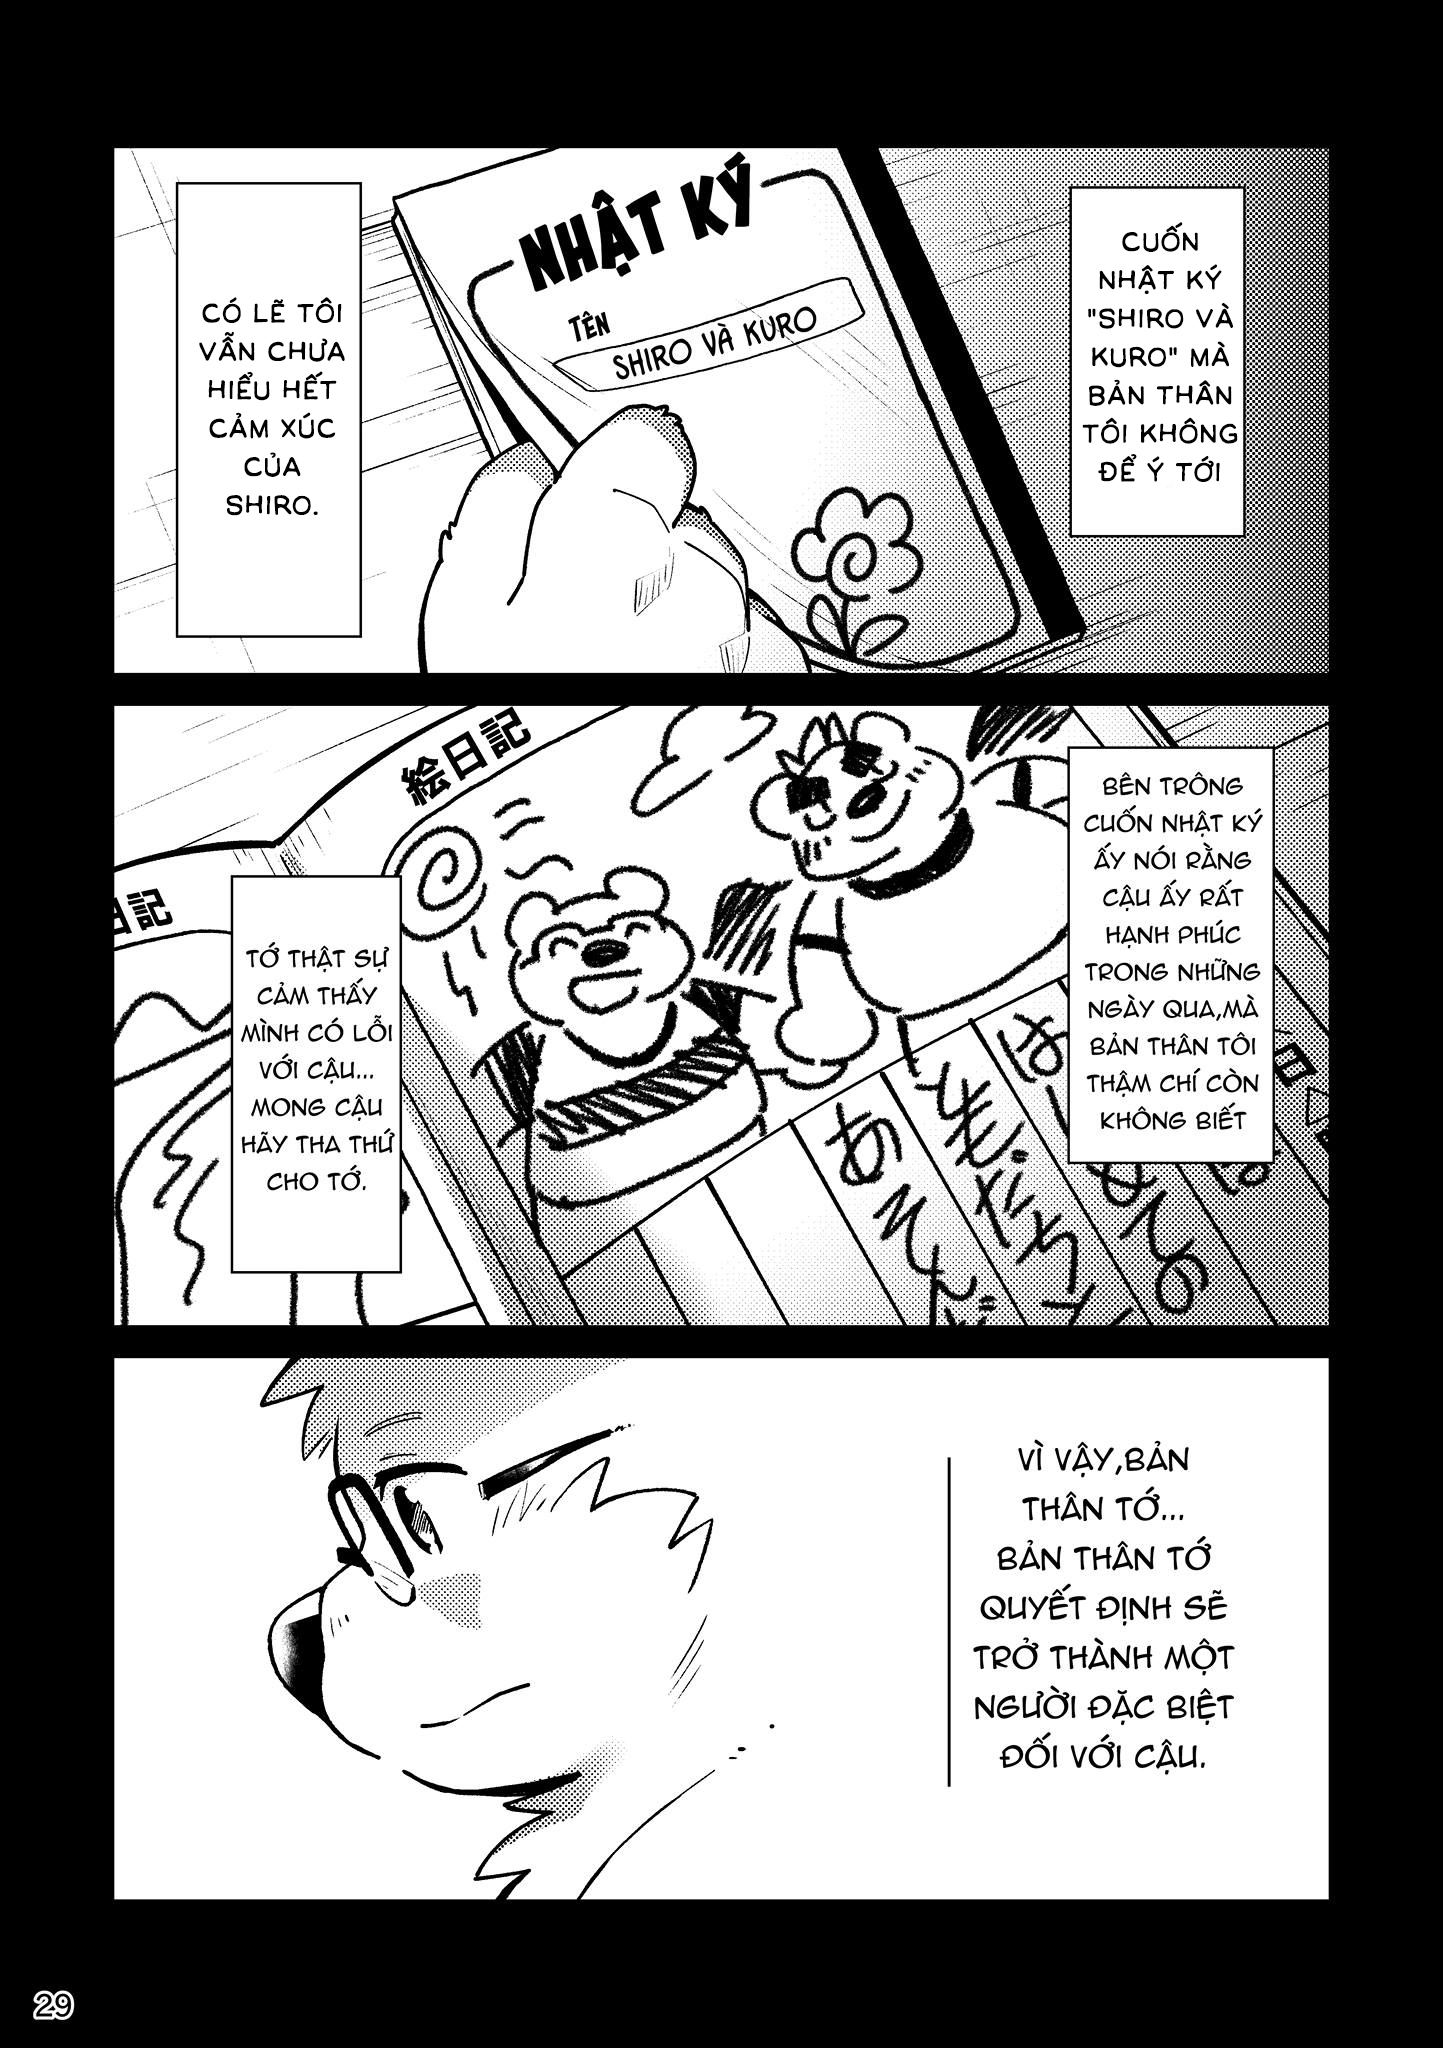 [Hinami] Shiro và Kuro  2 [VN] - Trang 29